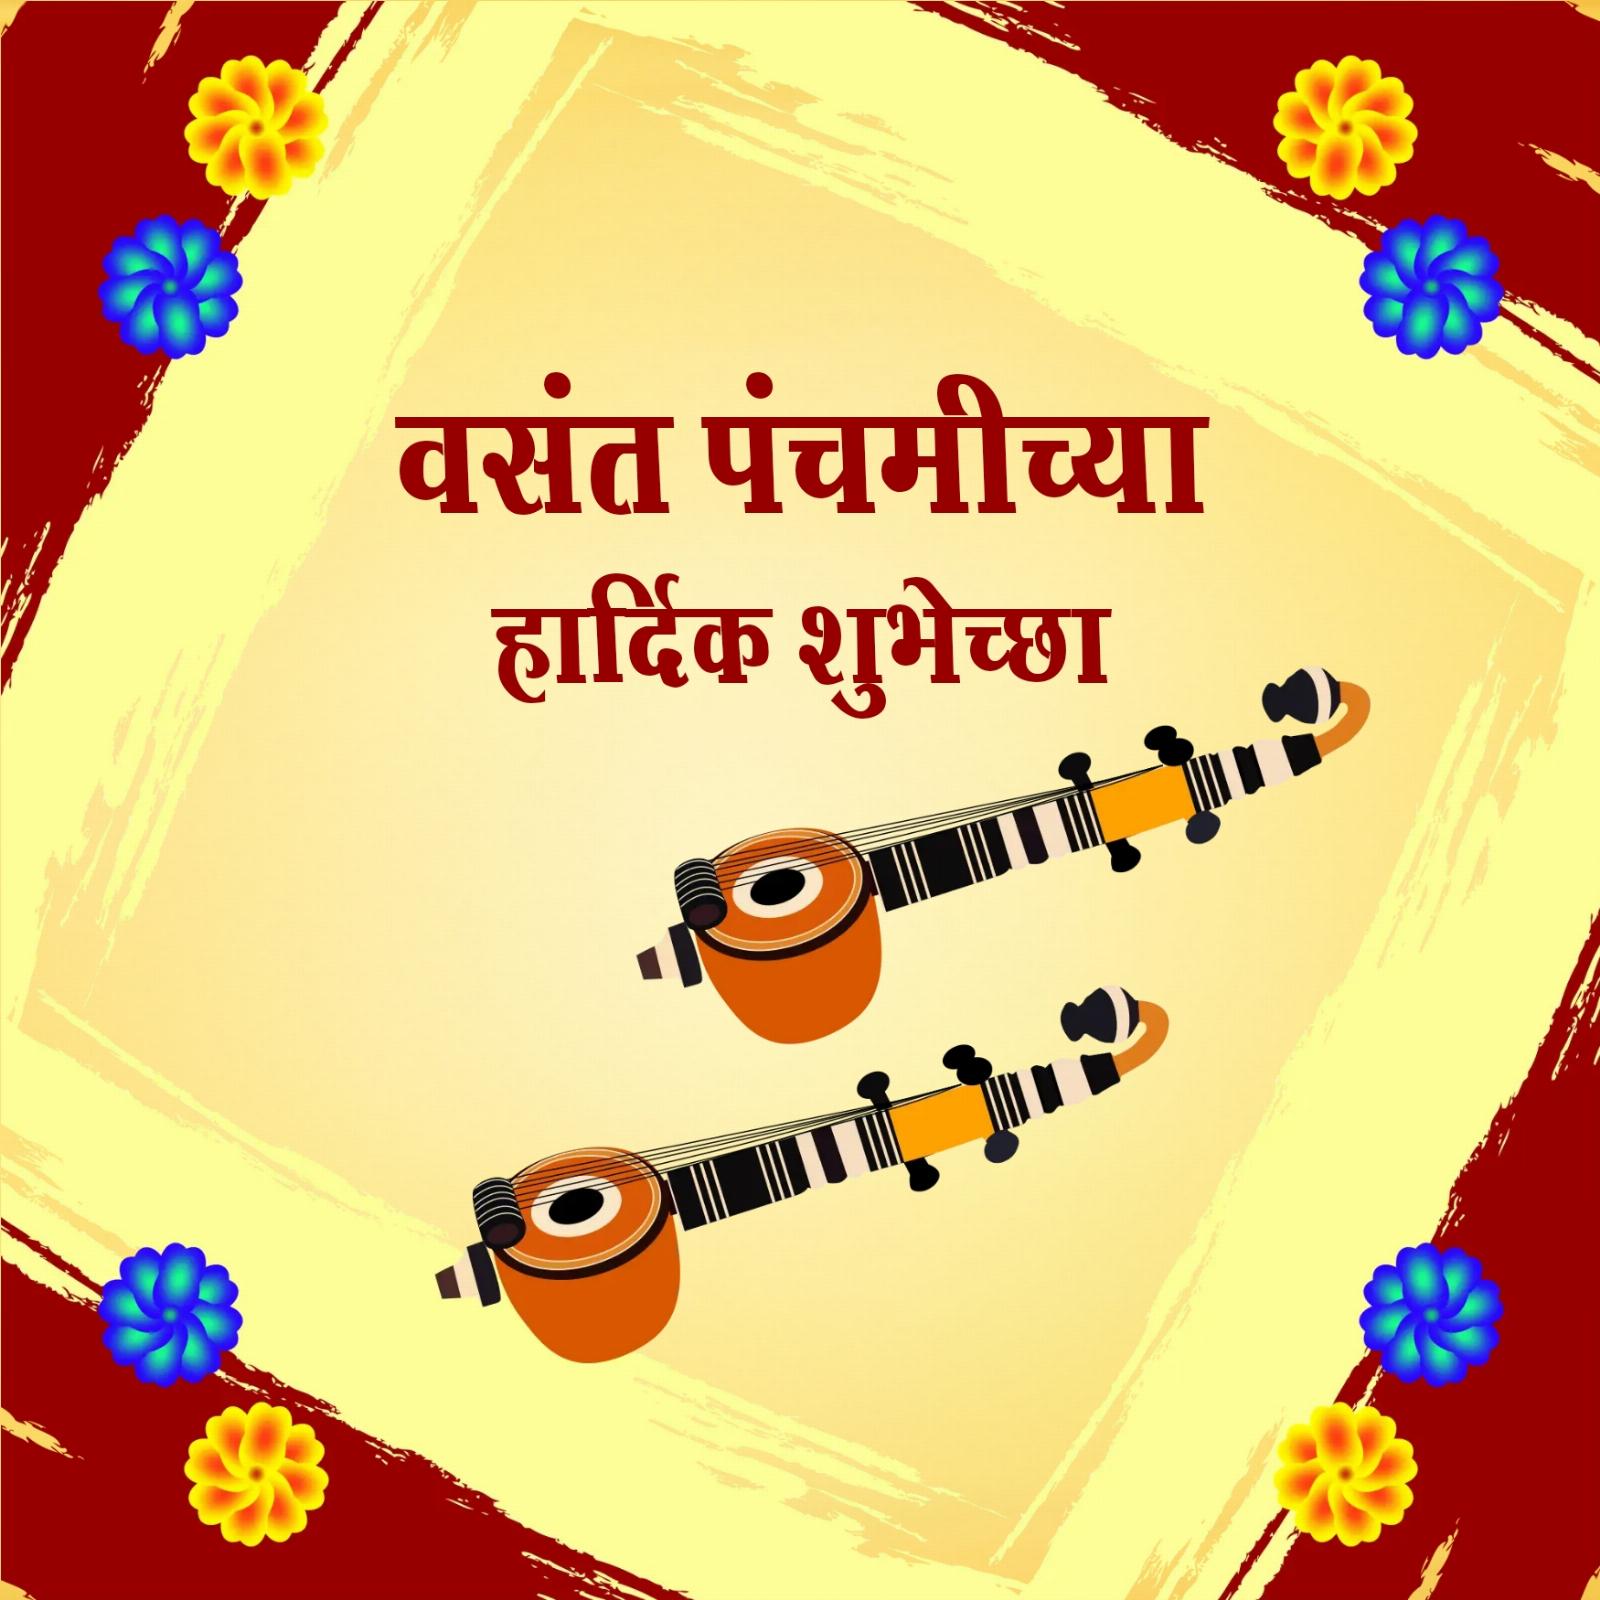 Happy Basant Panchami Images In Marathi - ShayariMaza